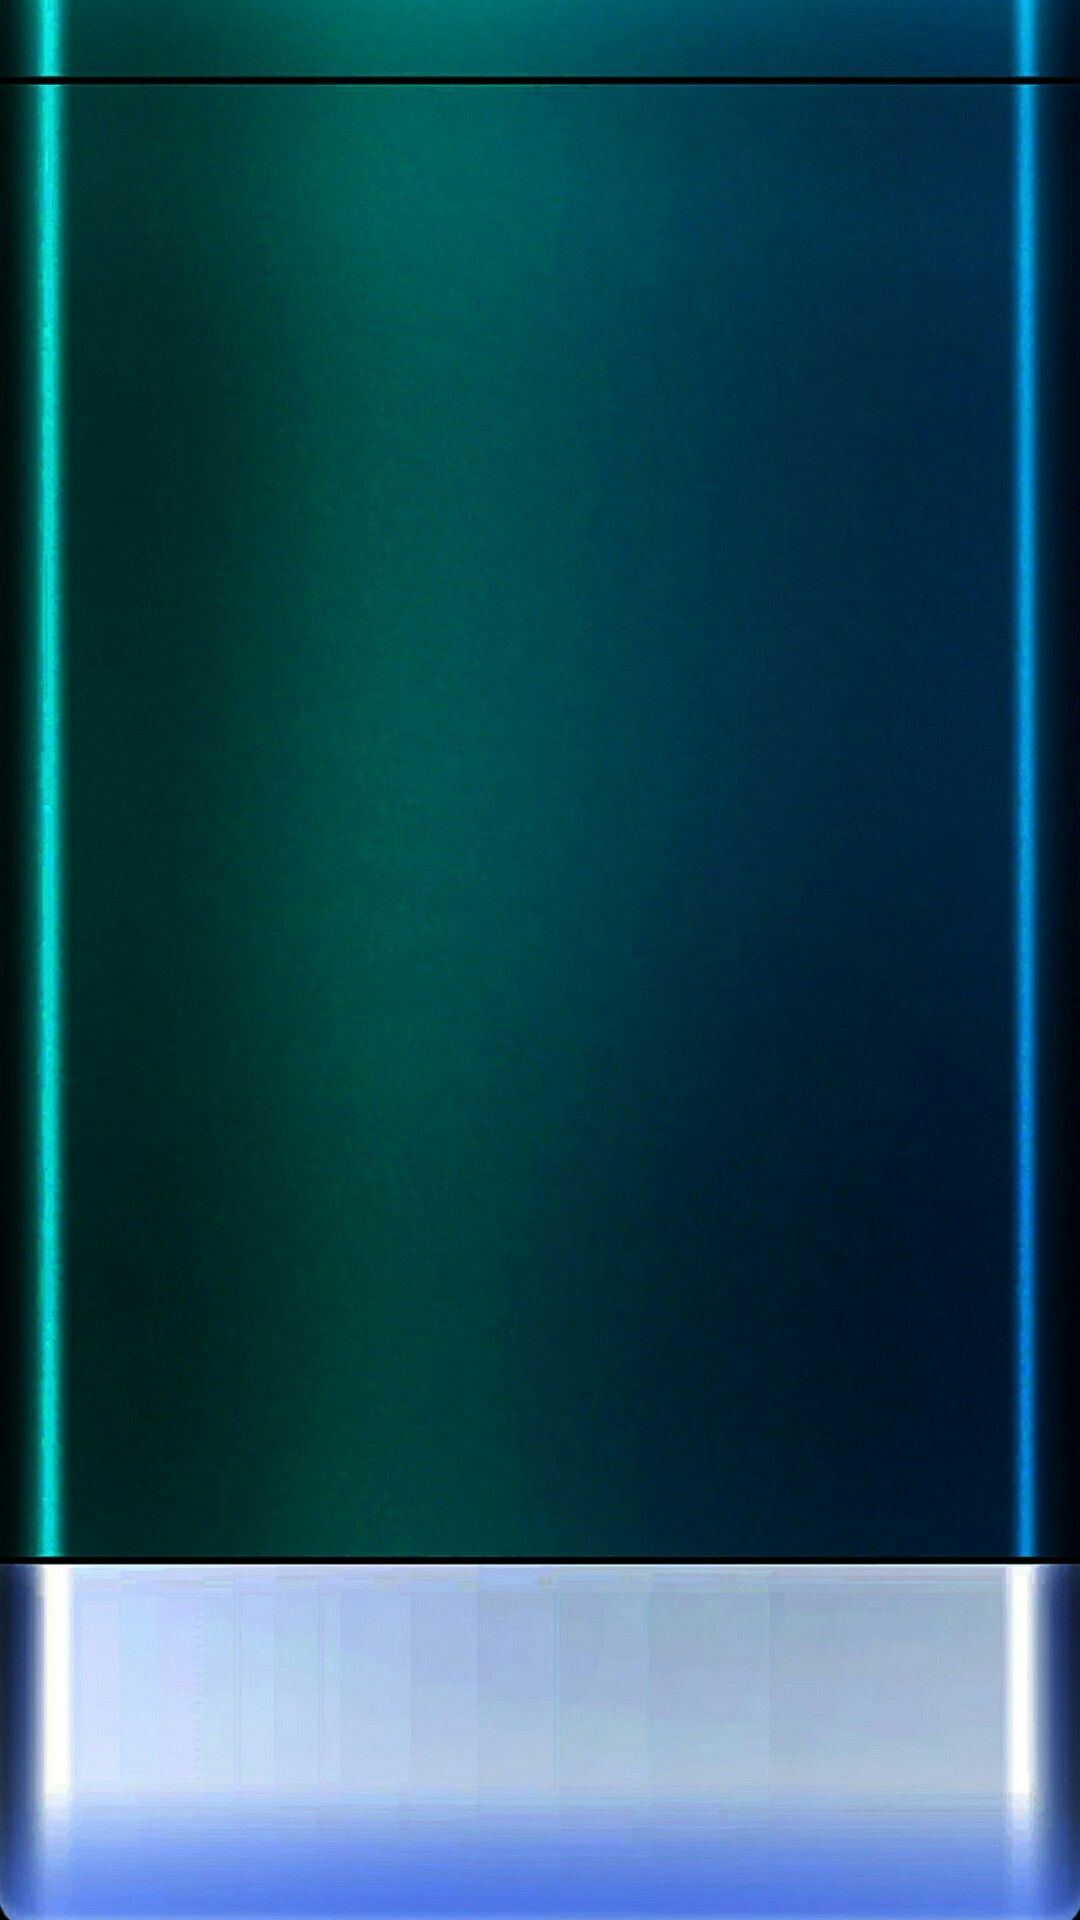 rand bildschirm hintergrundbild,blau,grün,aqua,türkis,kobaltblau